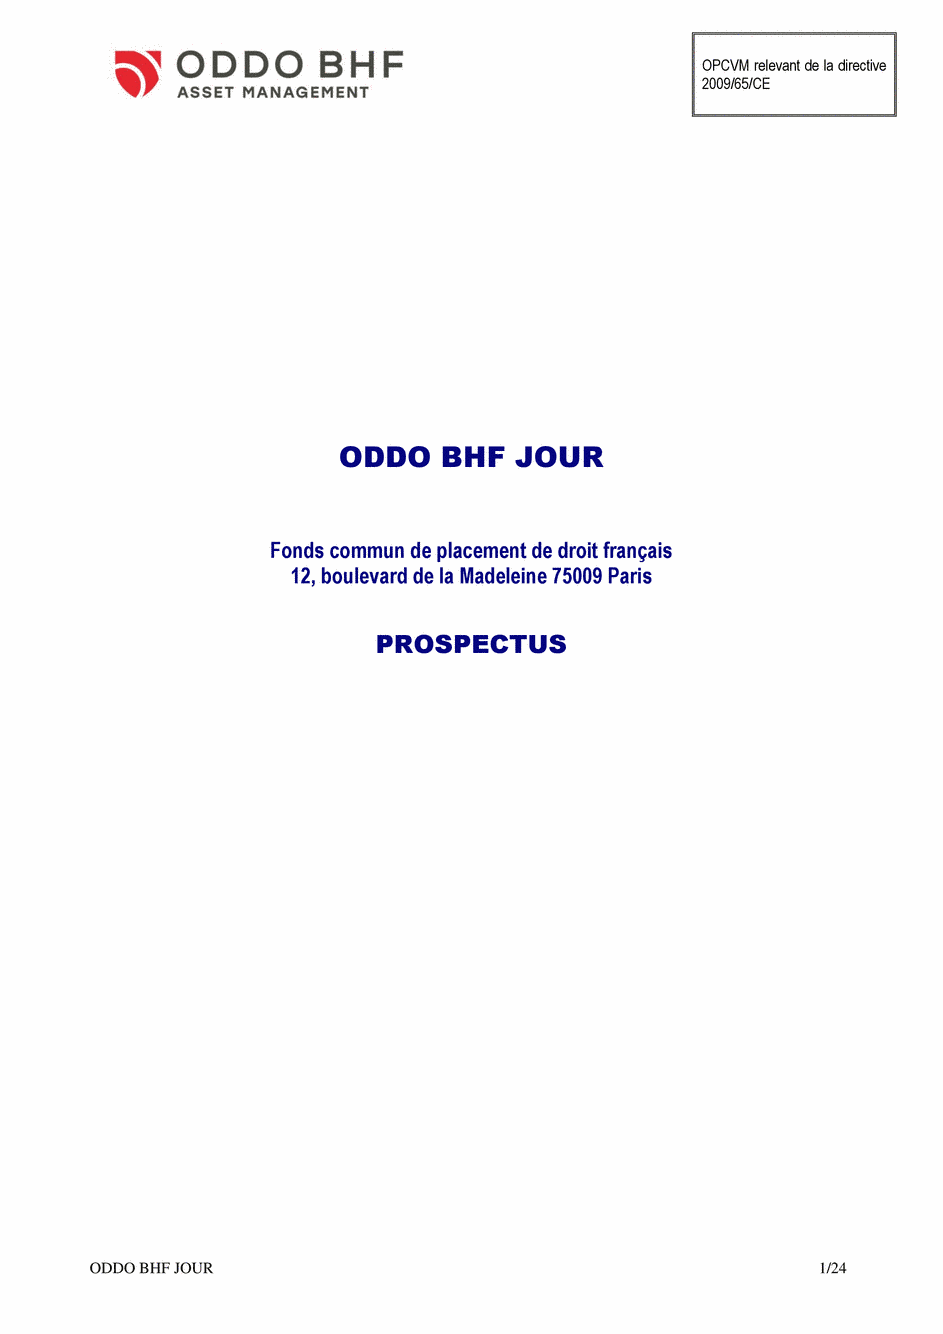 Prospectus ODDO BHF JOUR CR-EUR - 22/01/2020 - Français